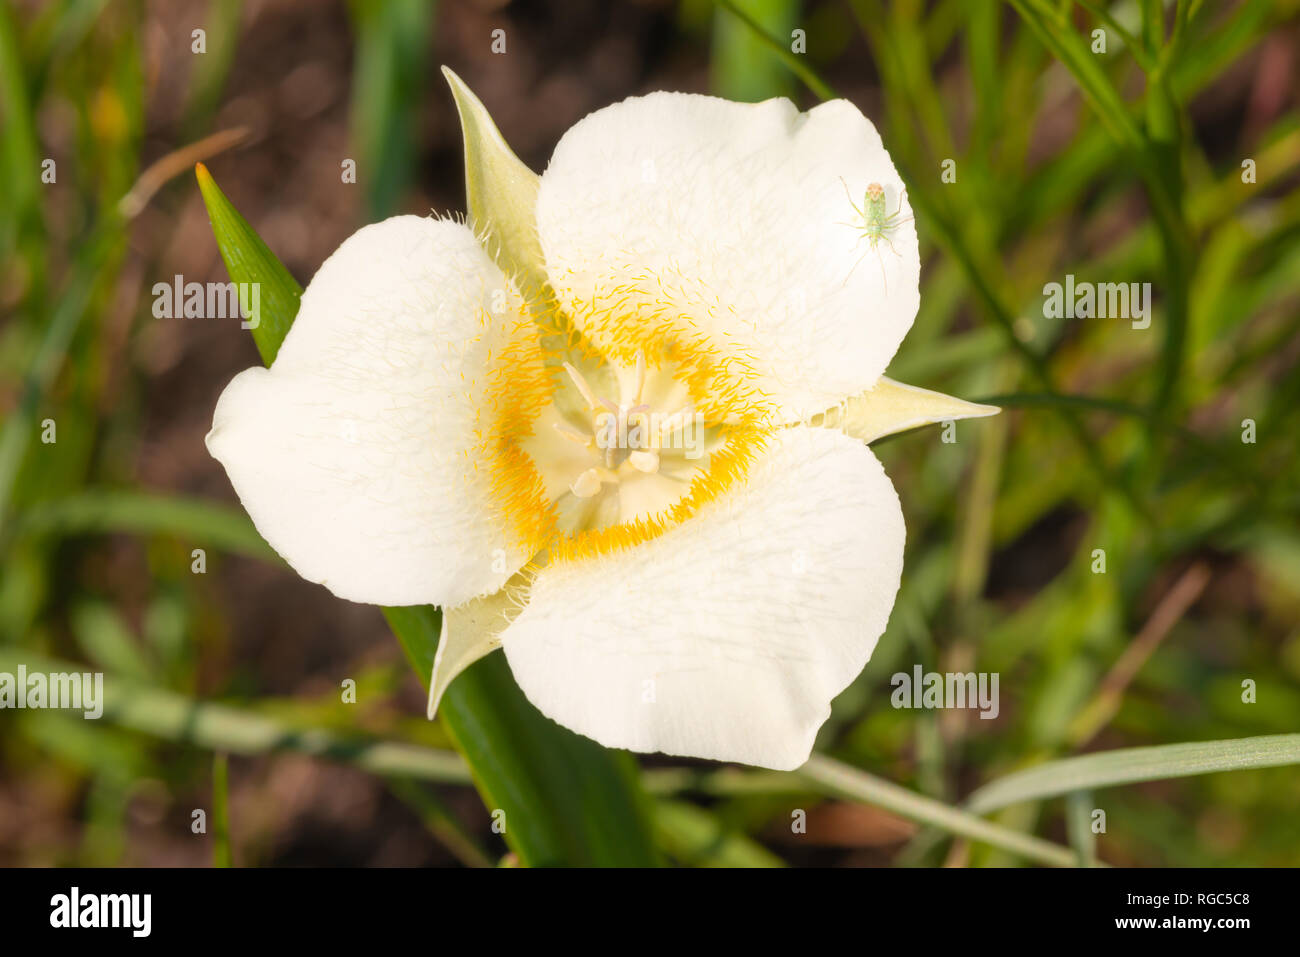 Eine einzelne Mariposa lily Blossom, Calochortus apiculatus, im Grasland des Waterton Lakes National Park, Alberta Kanada wächst. Stockfoto